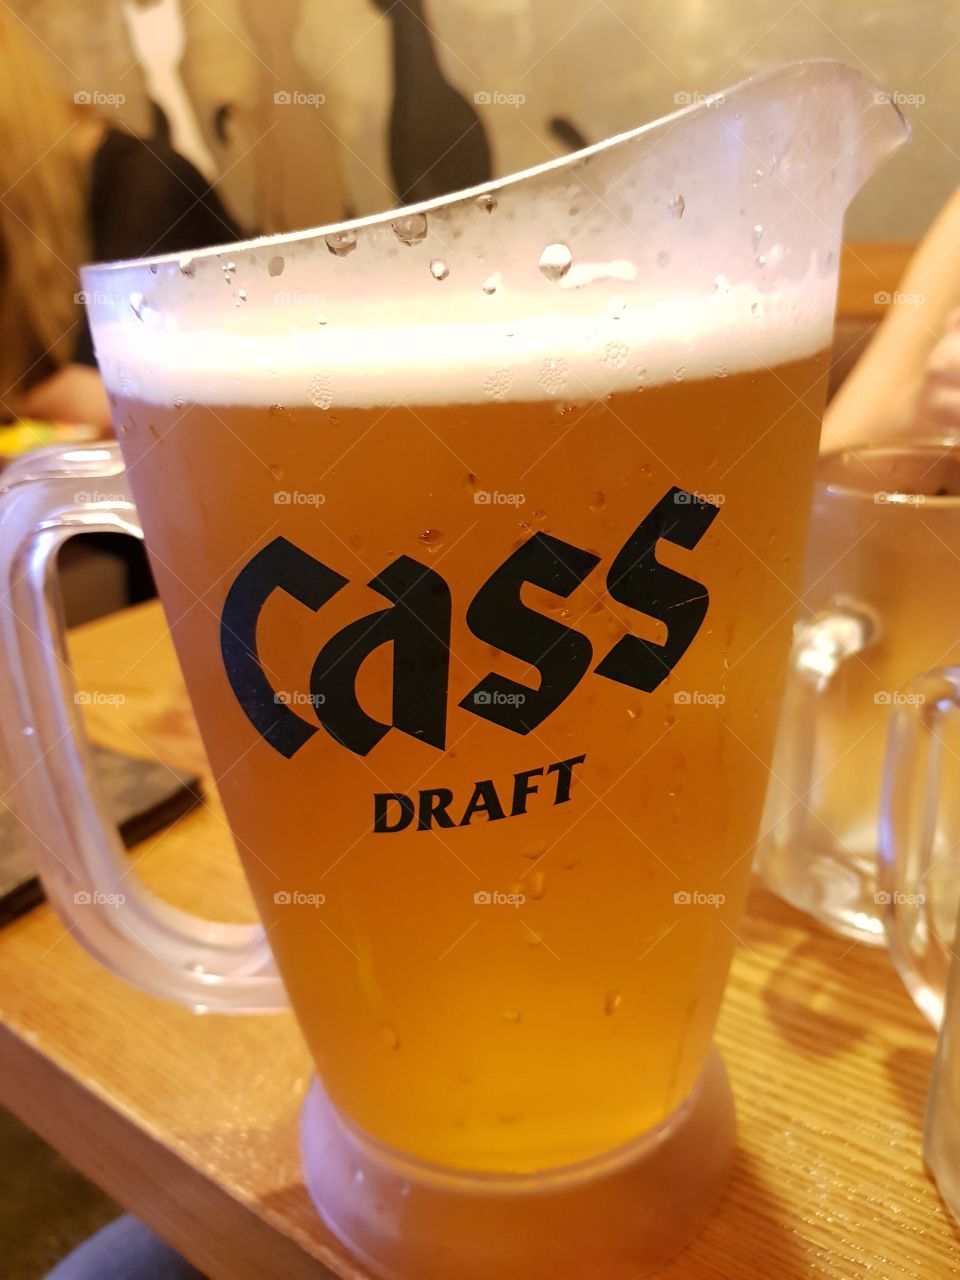 cass draft beer